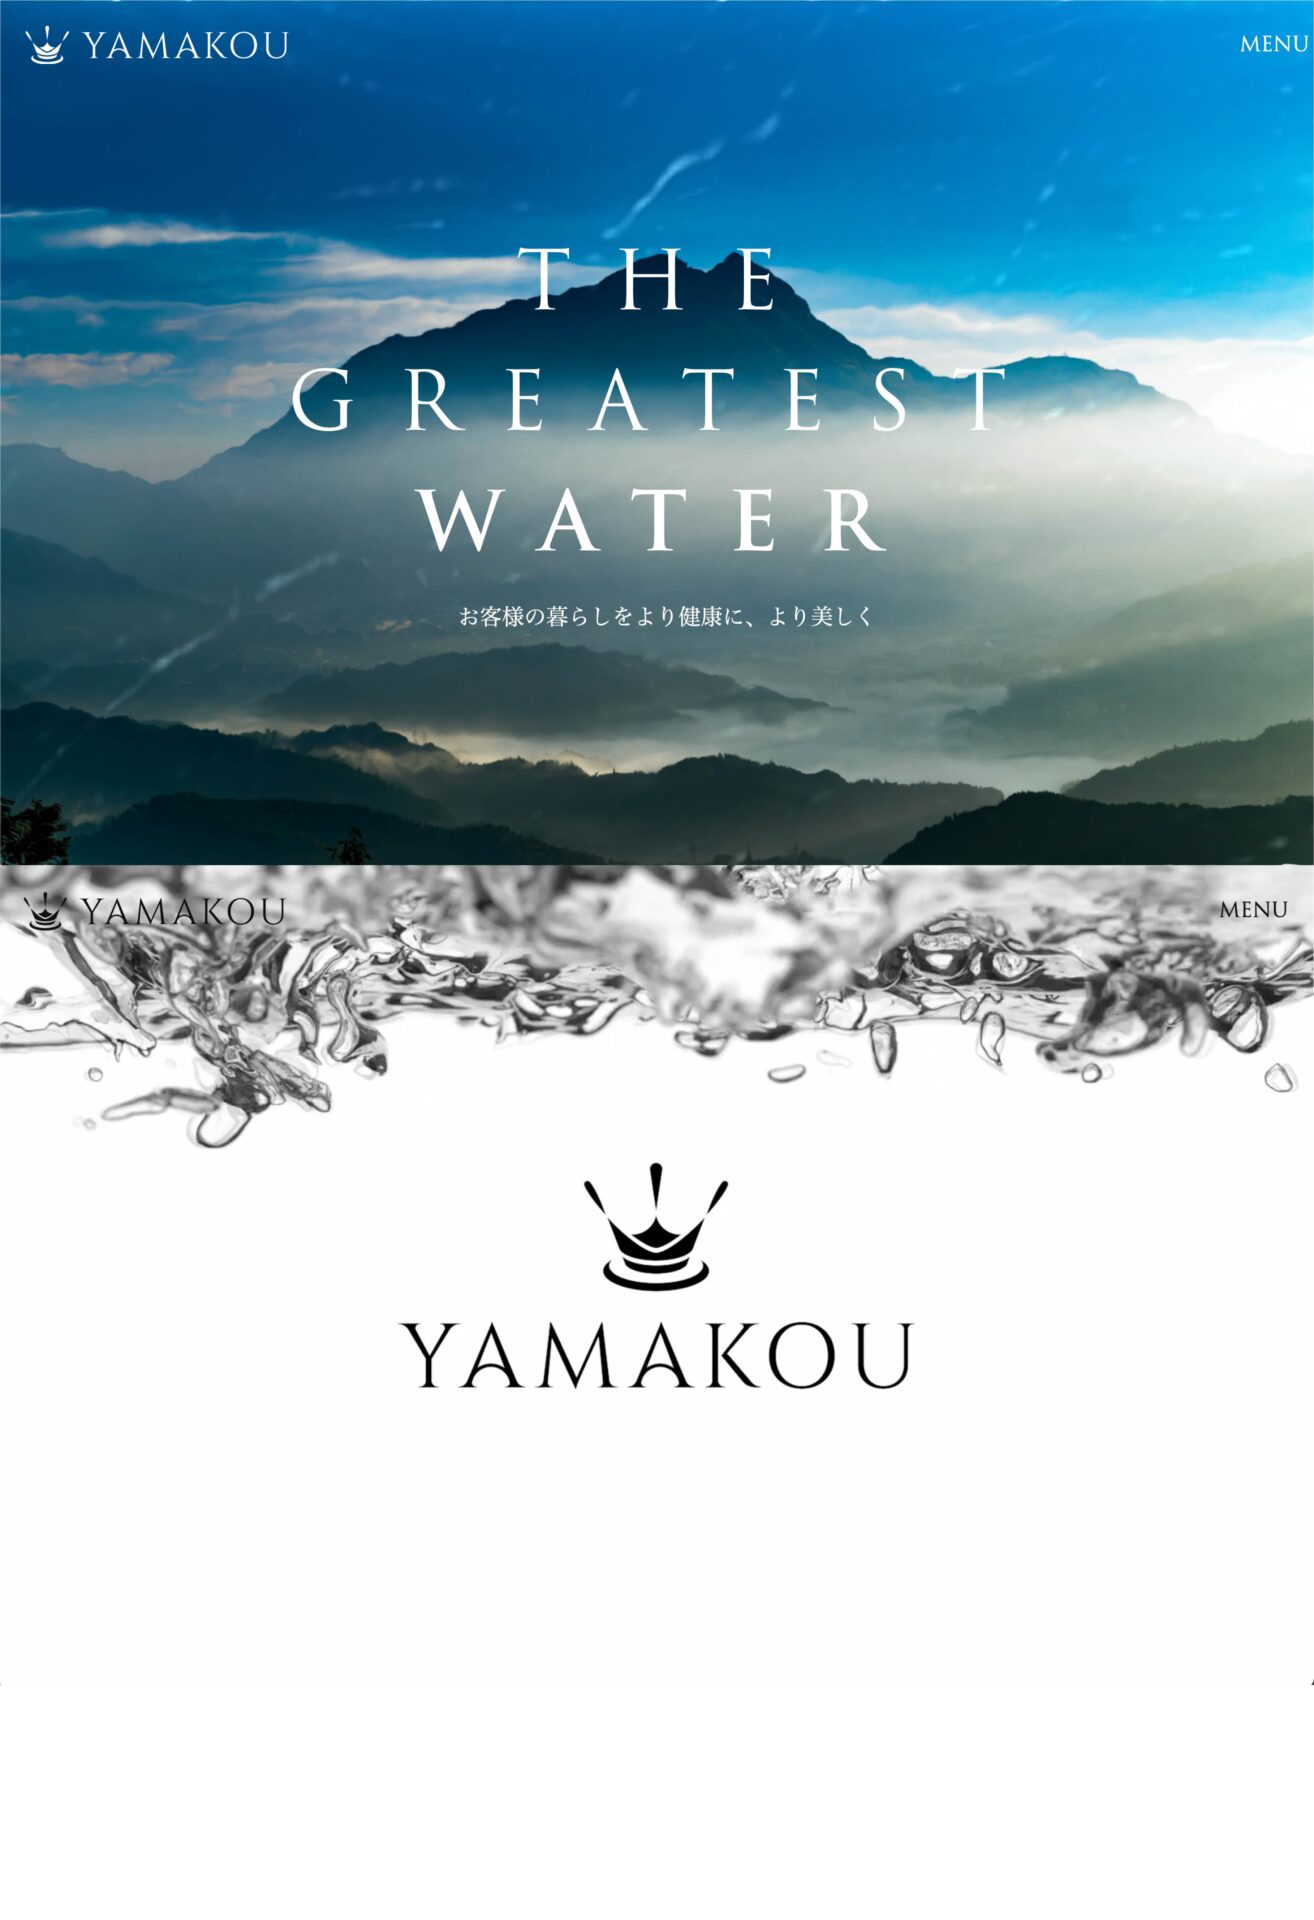 「YAMAKOU」の実績画像